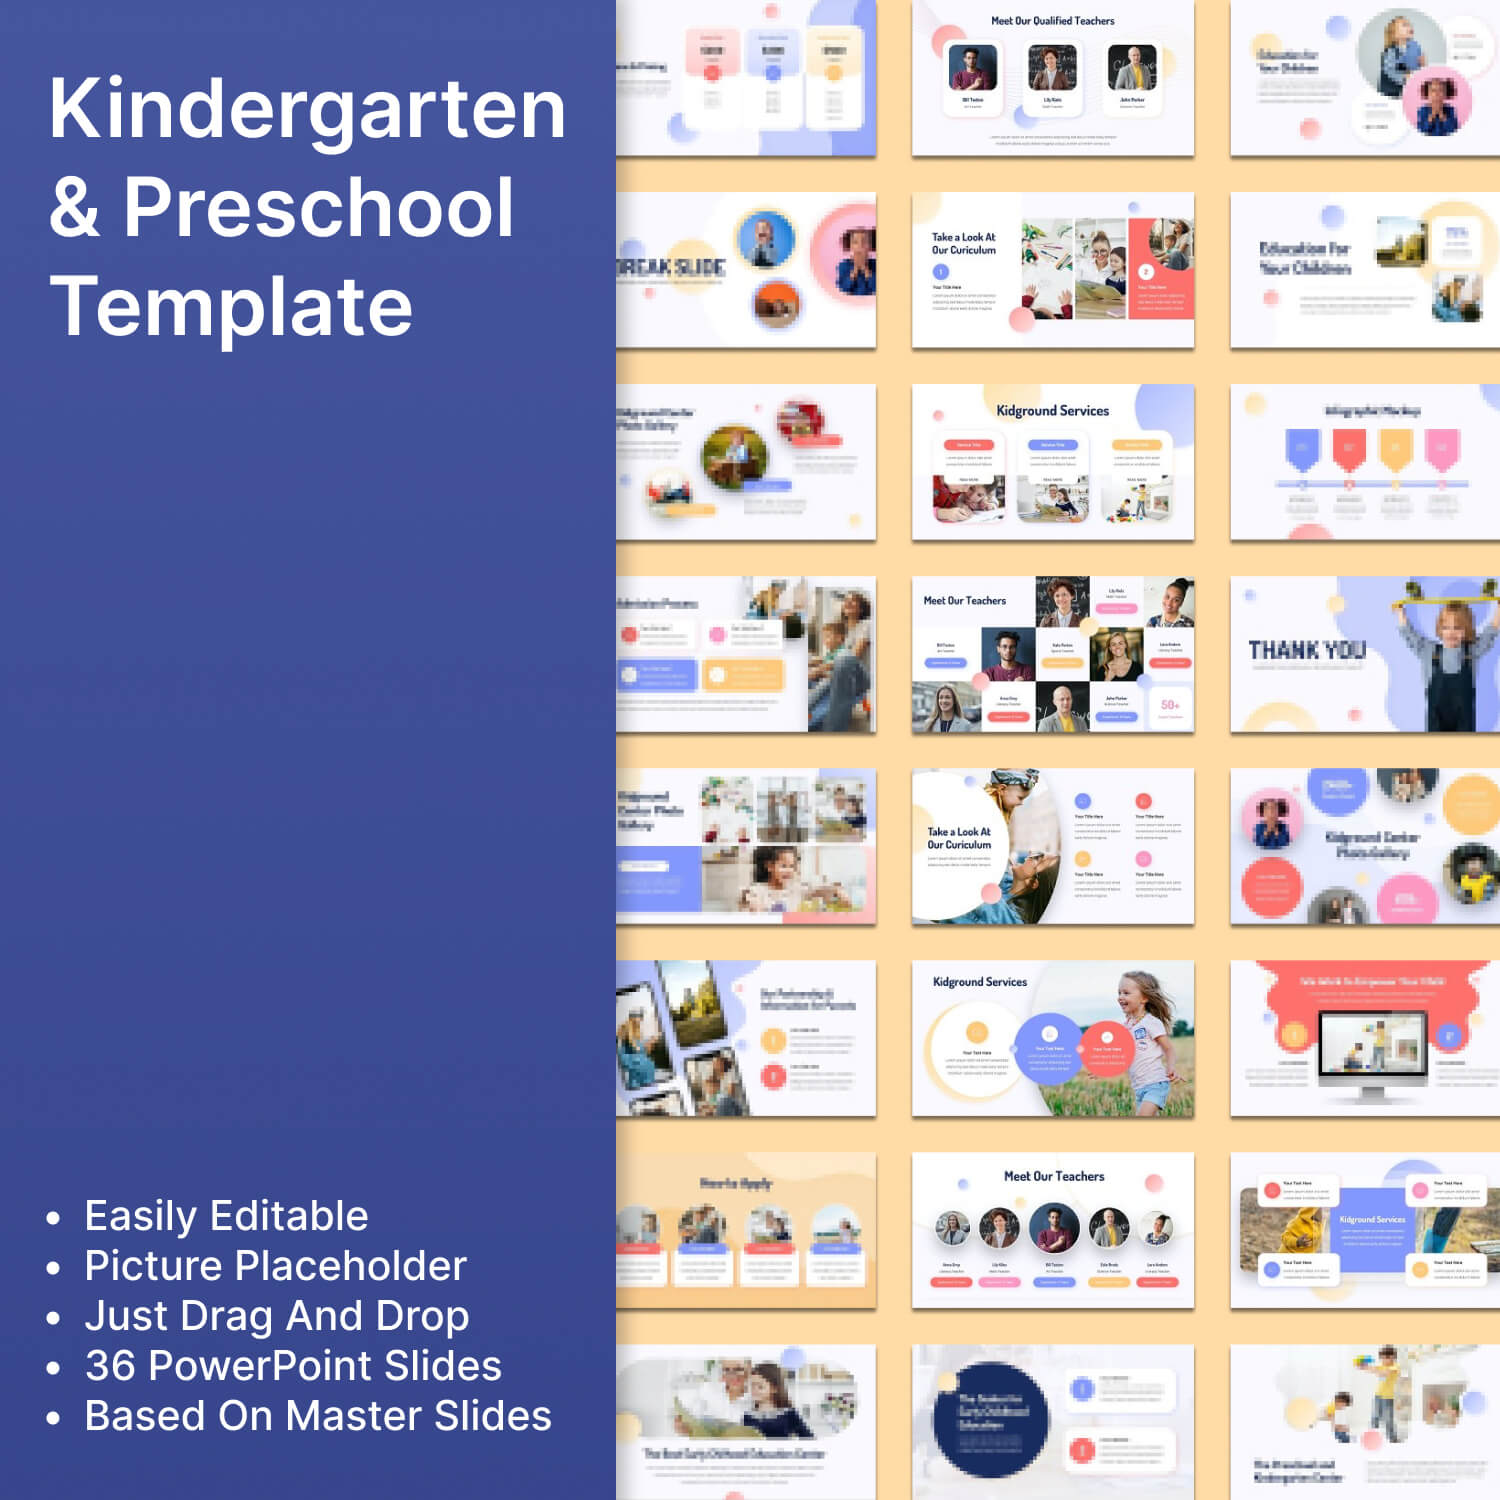 Kindergarten & preschool template.